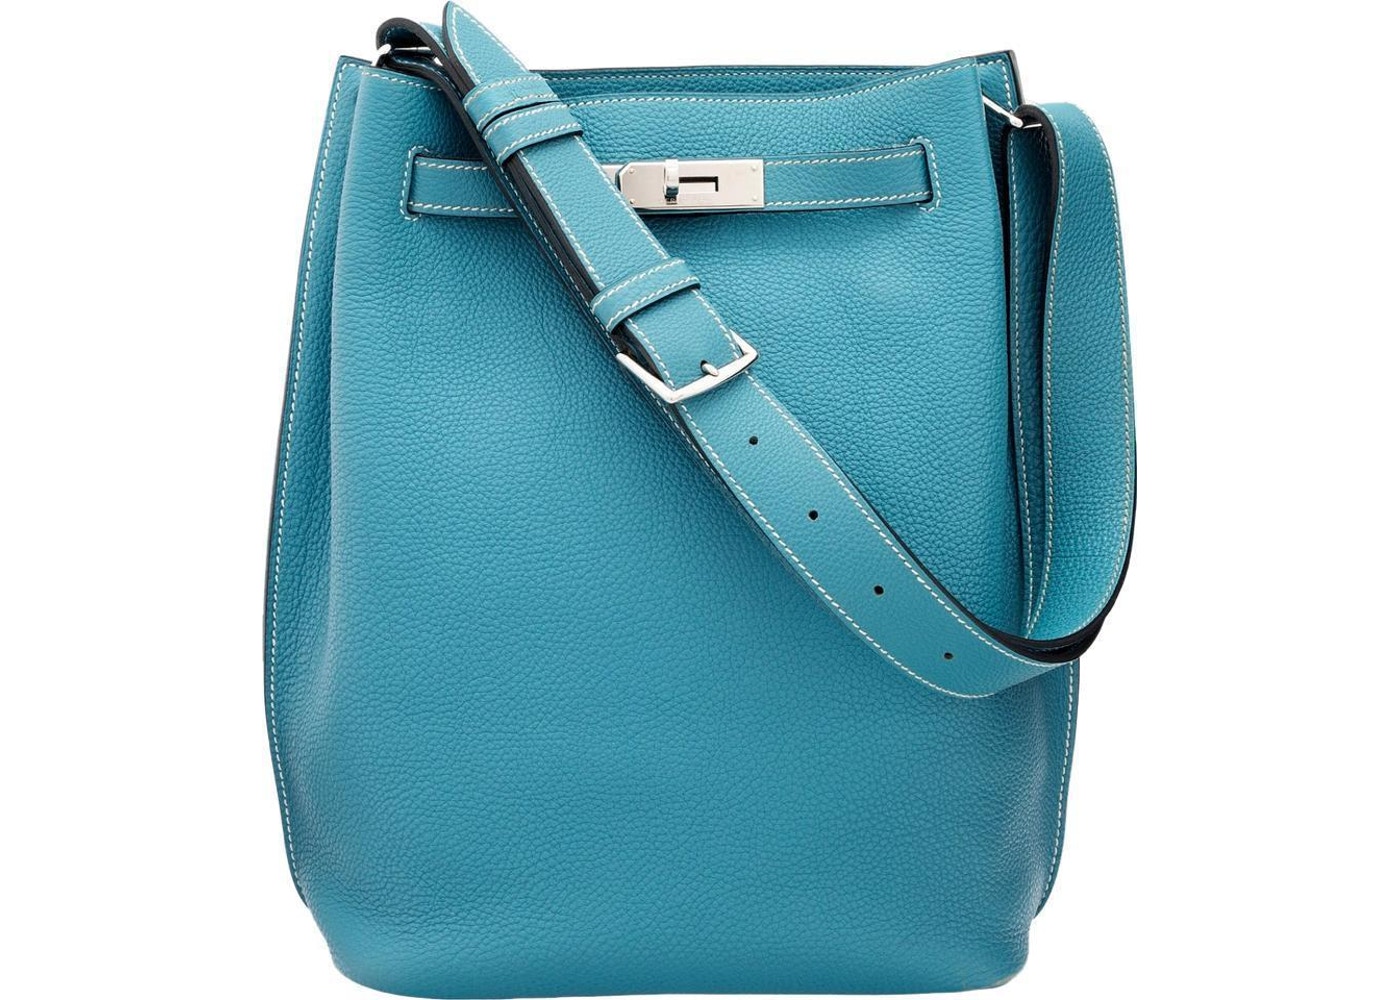 Hermes Birkin 30 Bleu Paradis – Bags Blogger